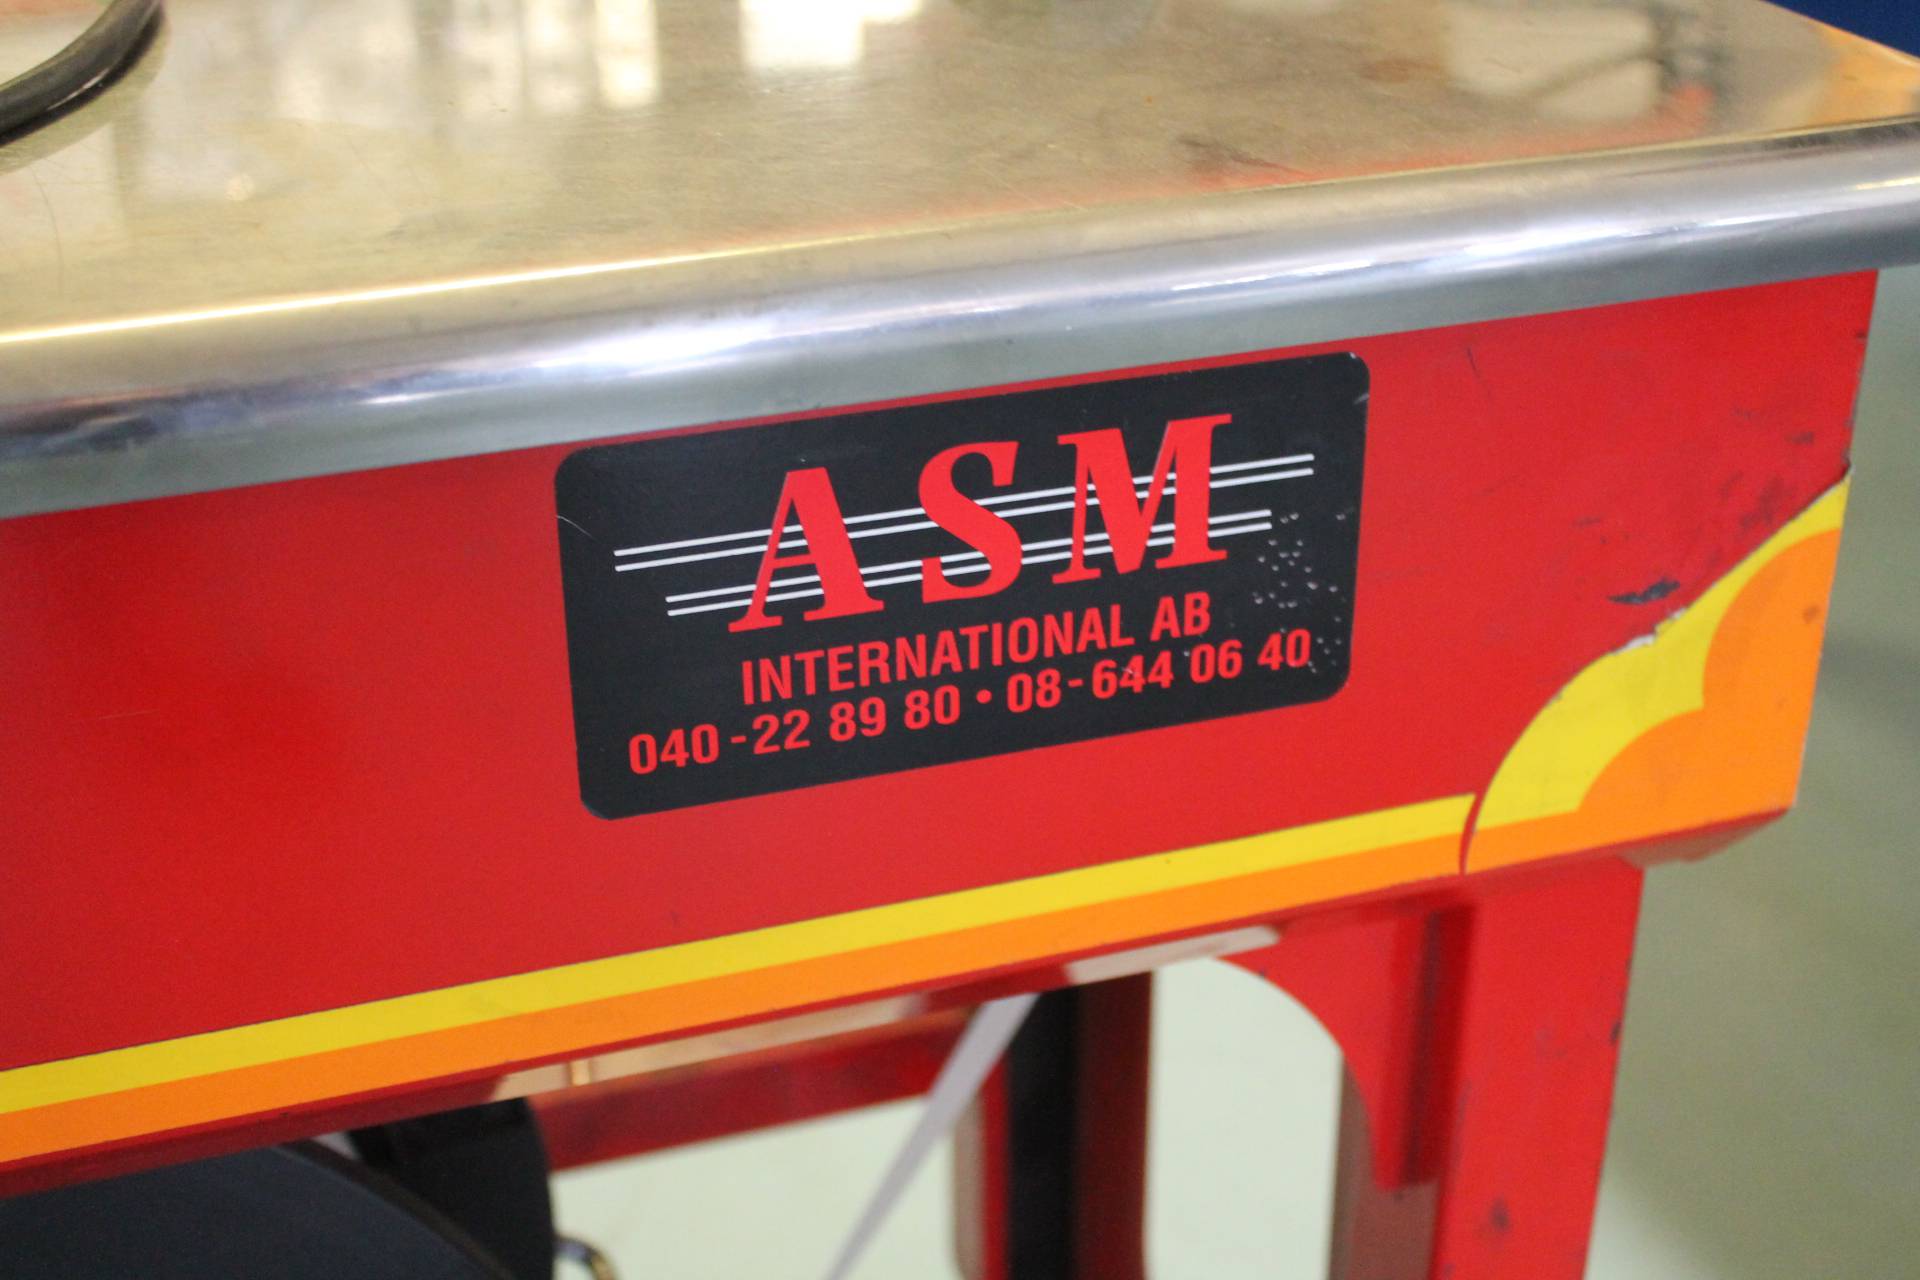 AB International 644 (A)